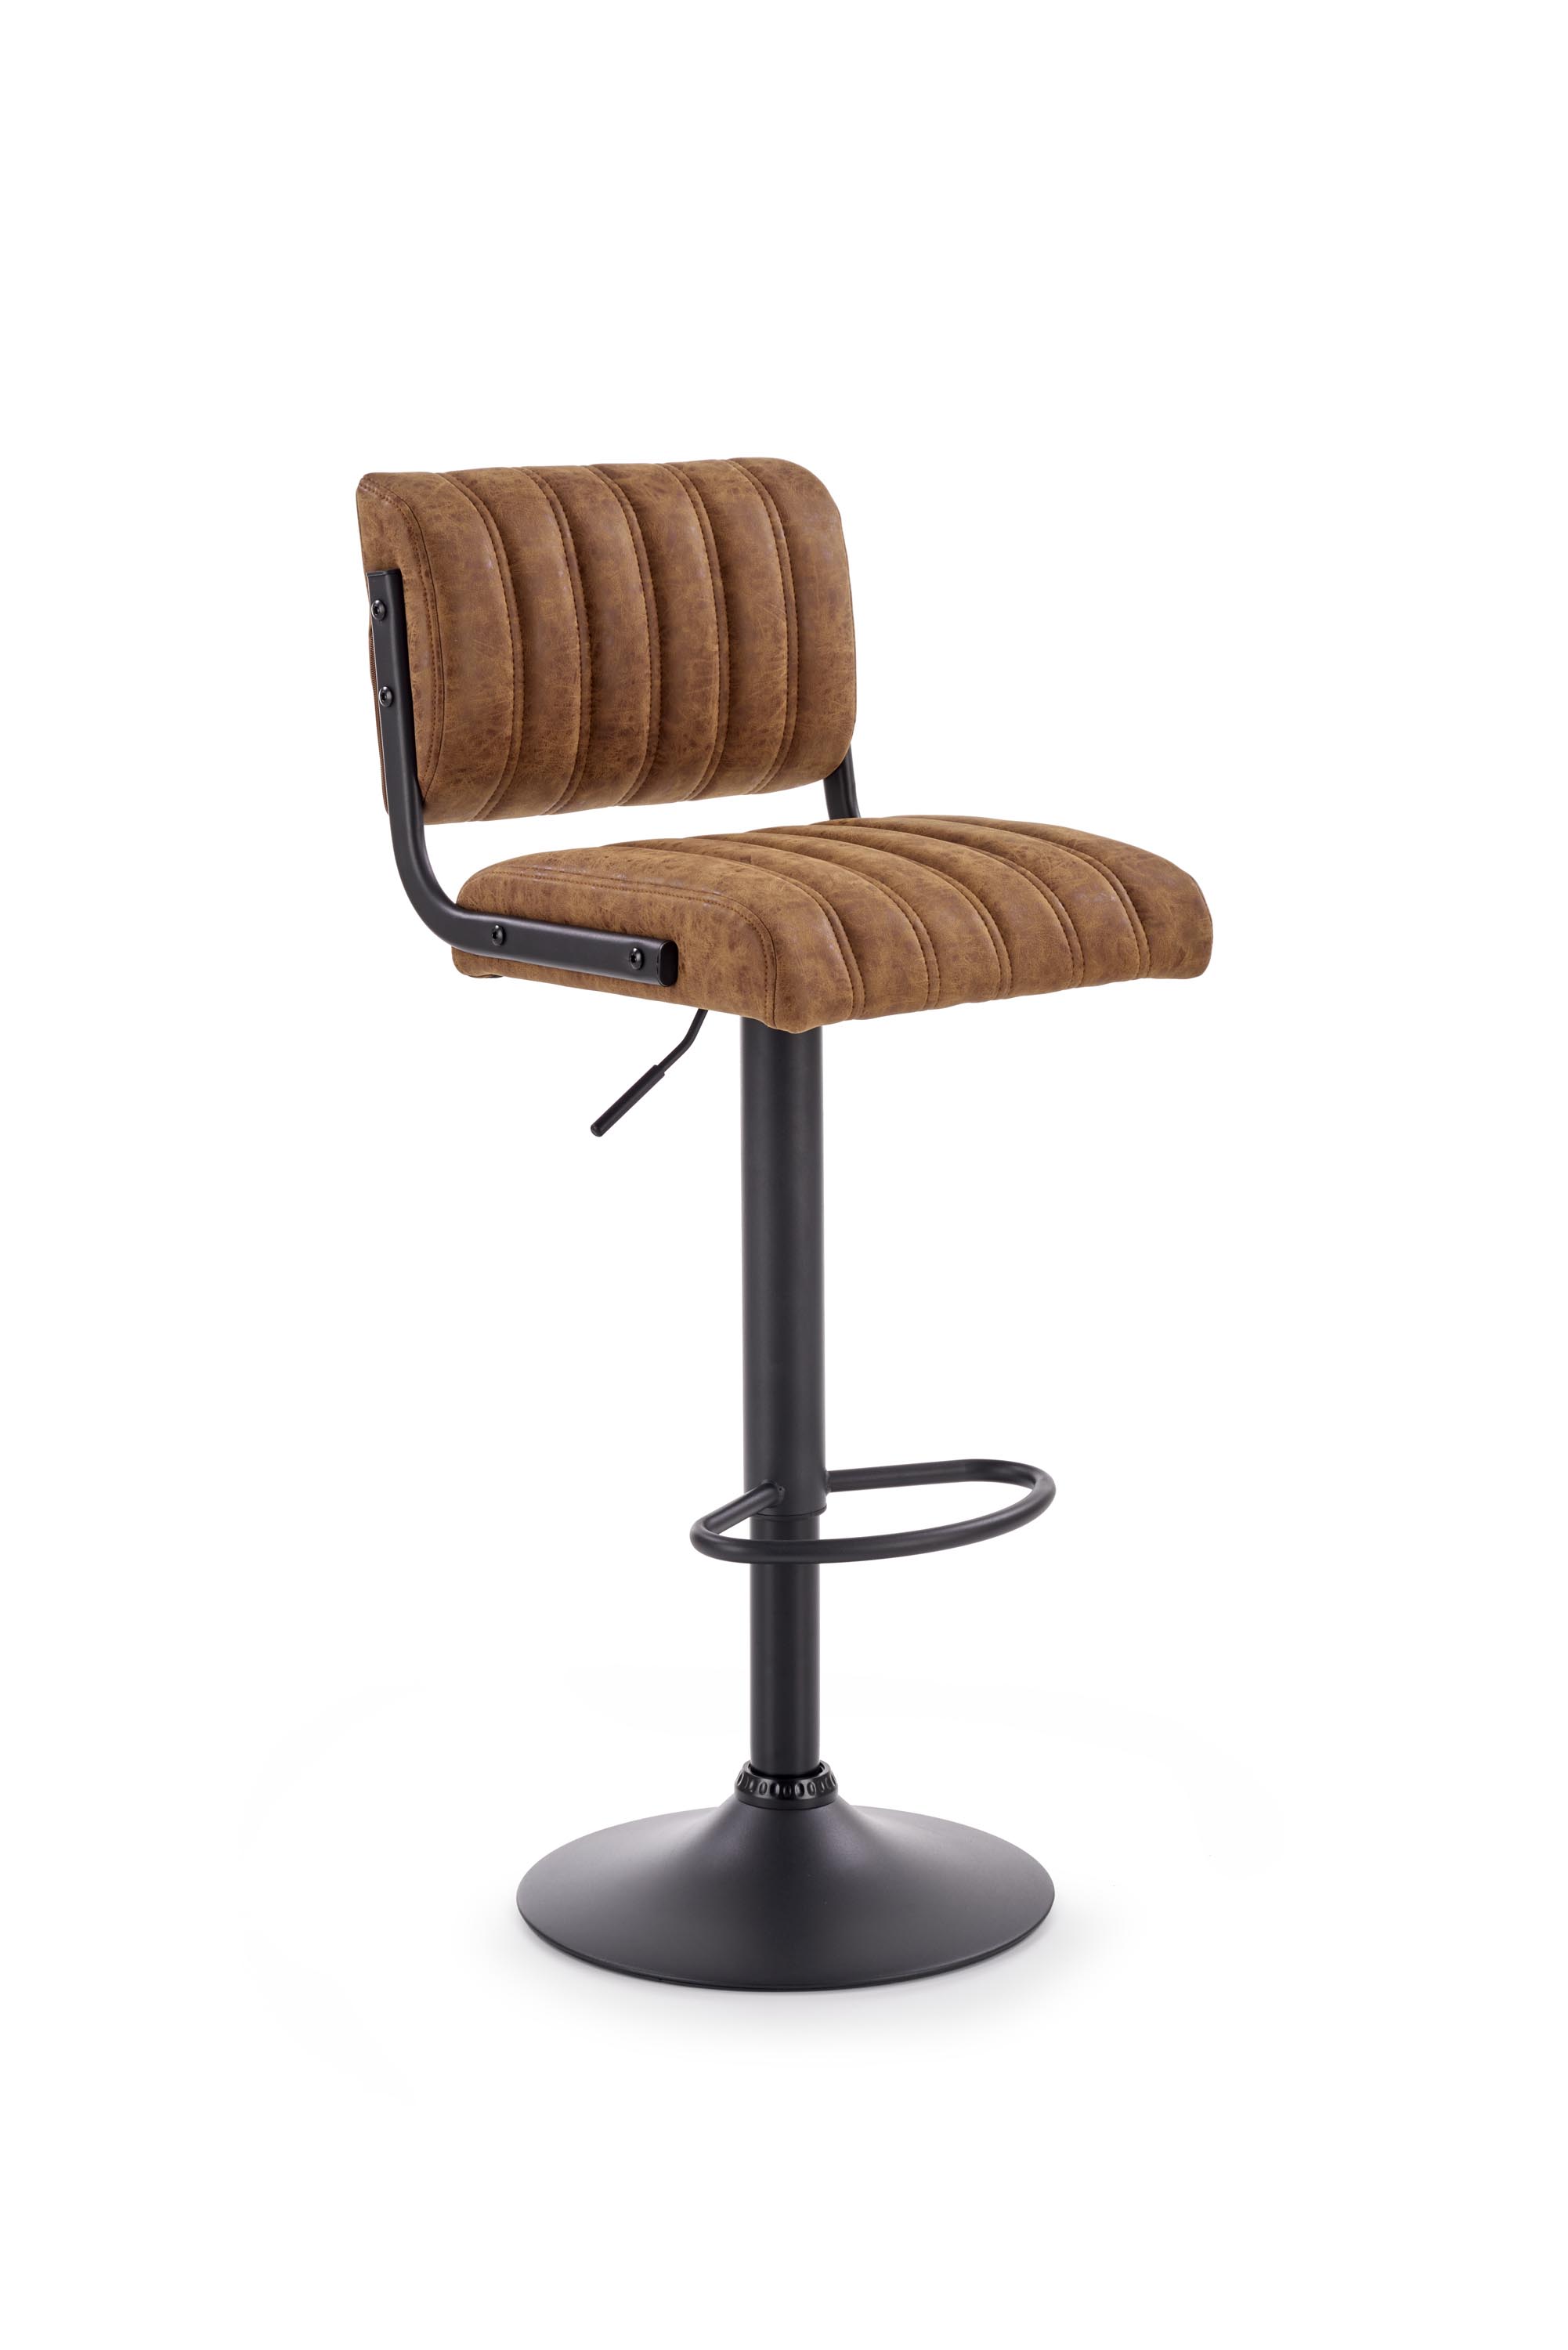 Barová židle H88 - Černý/Hnědý Barová židle h88 - Černý/Hnědý